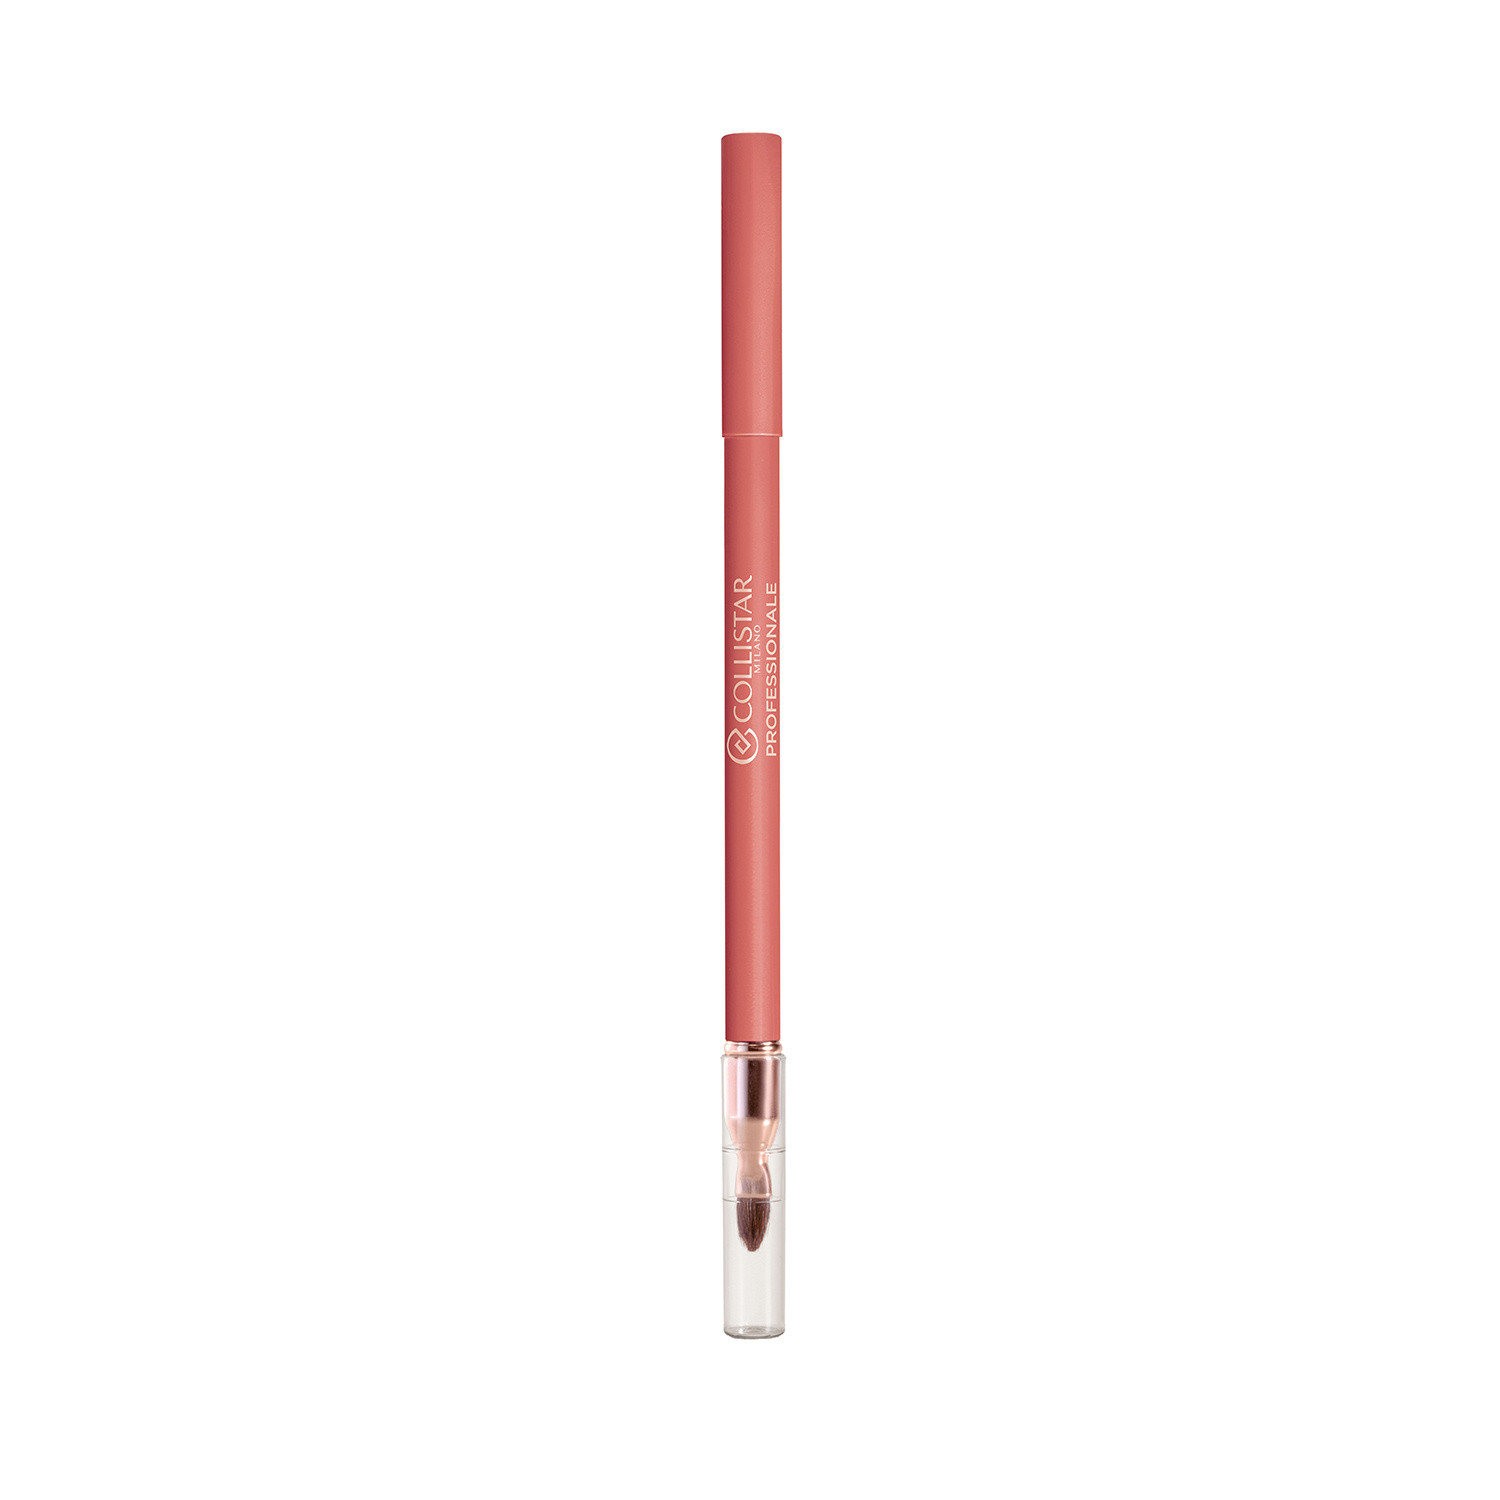 Collistar - Professionale matita labbra lunga durata - 102 Rosa Antico, Rosa antico, large image number 0